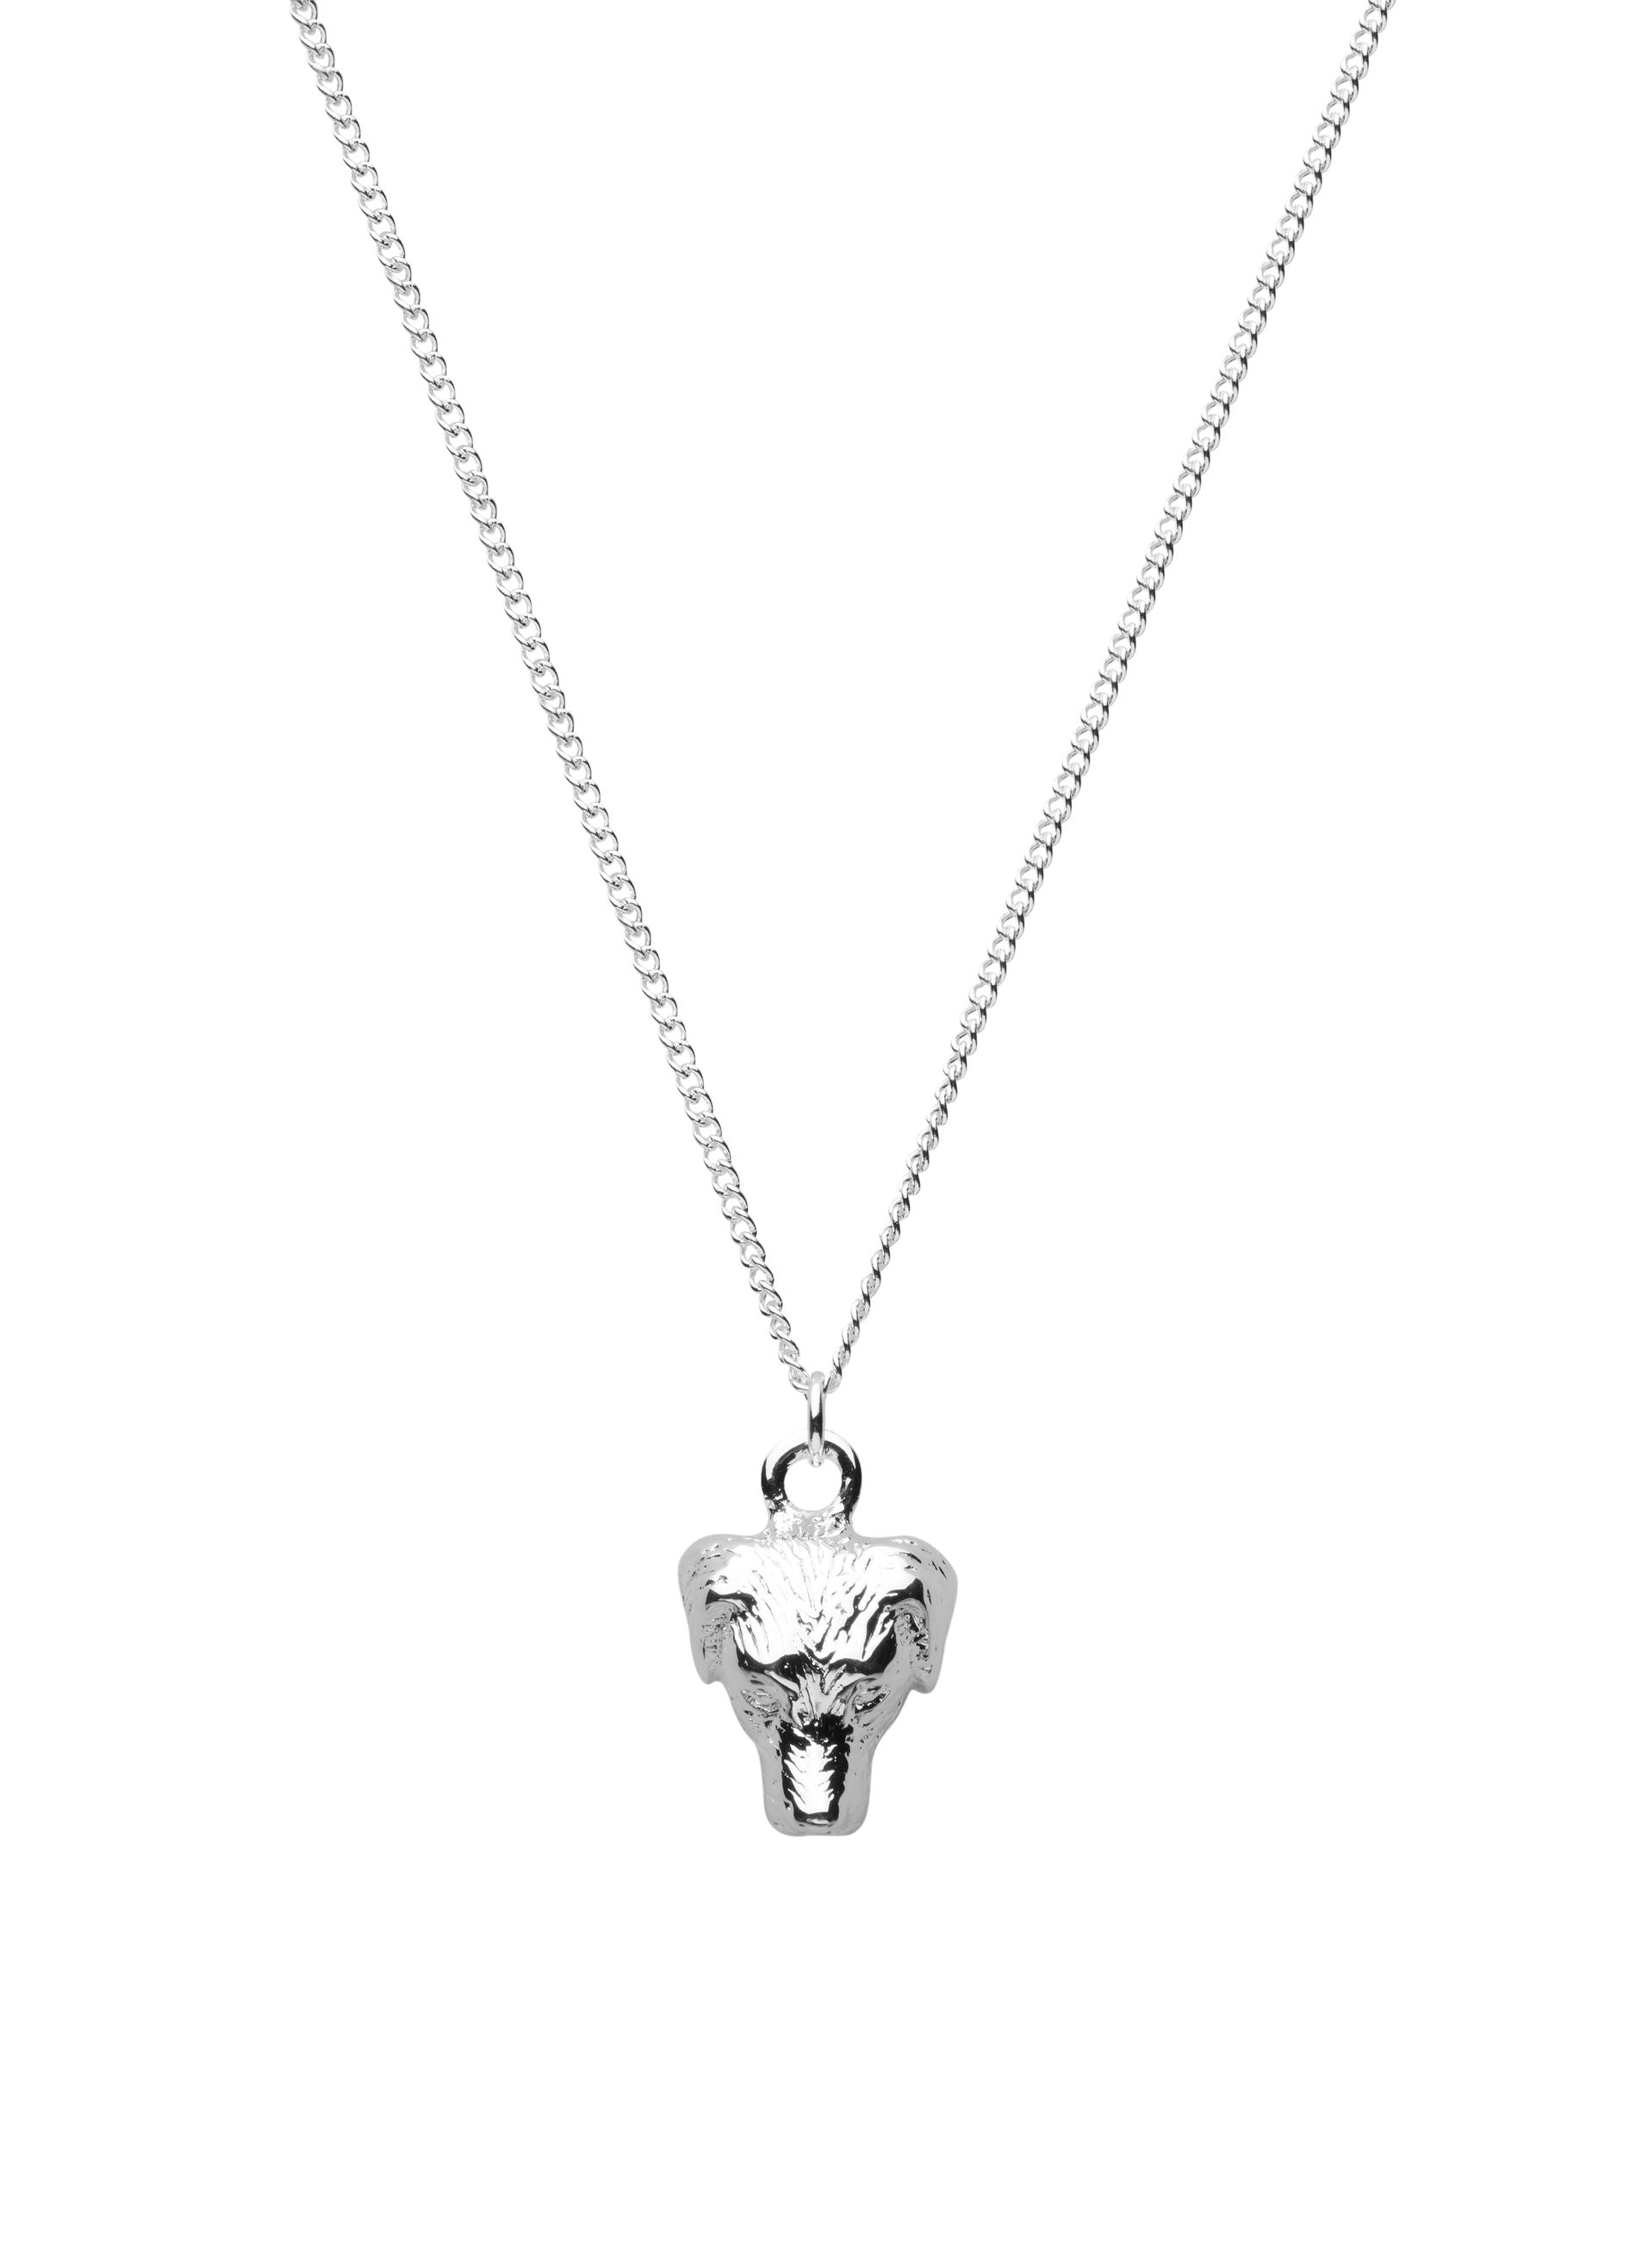 Skultuna Labrador Necklace, Silver Plated